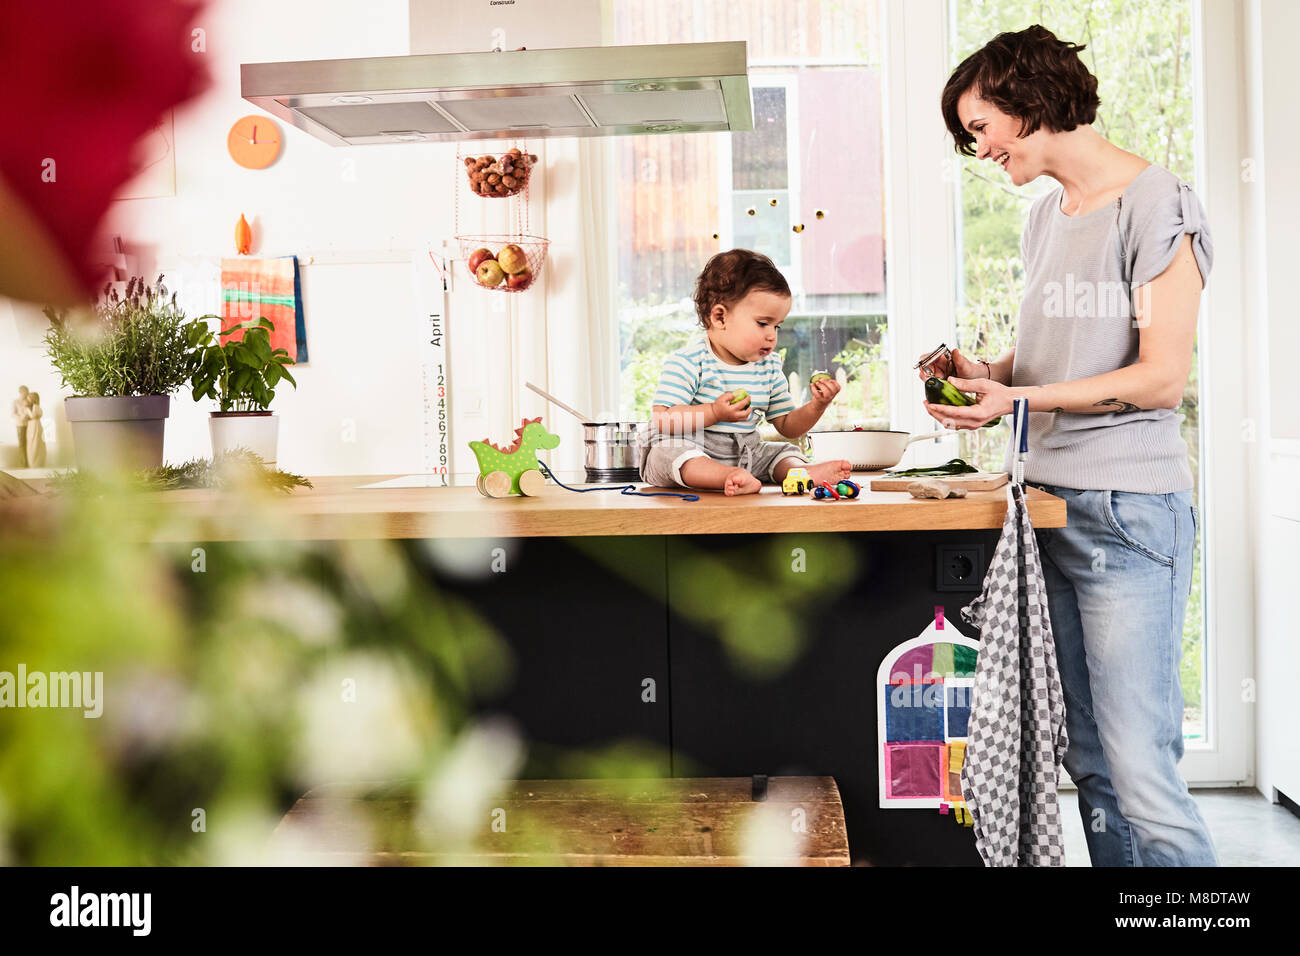 Figlia del bambino seduto sul bancone cucina guarda la madre preparare verdure Foto Stock